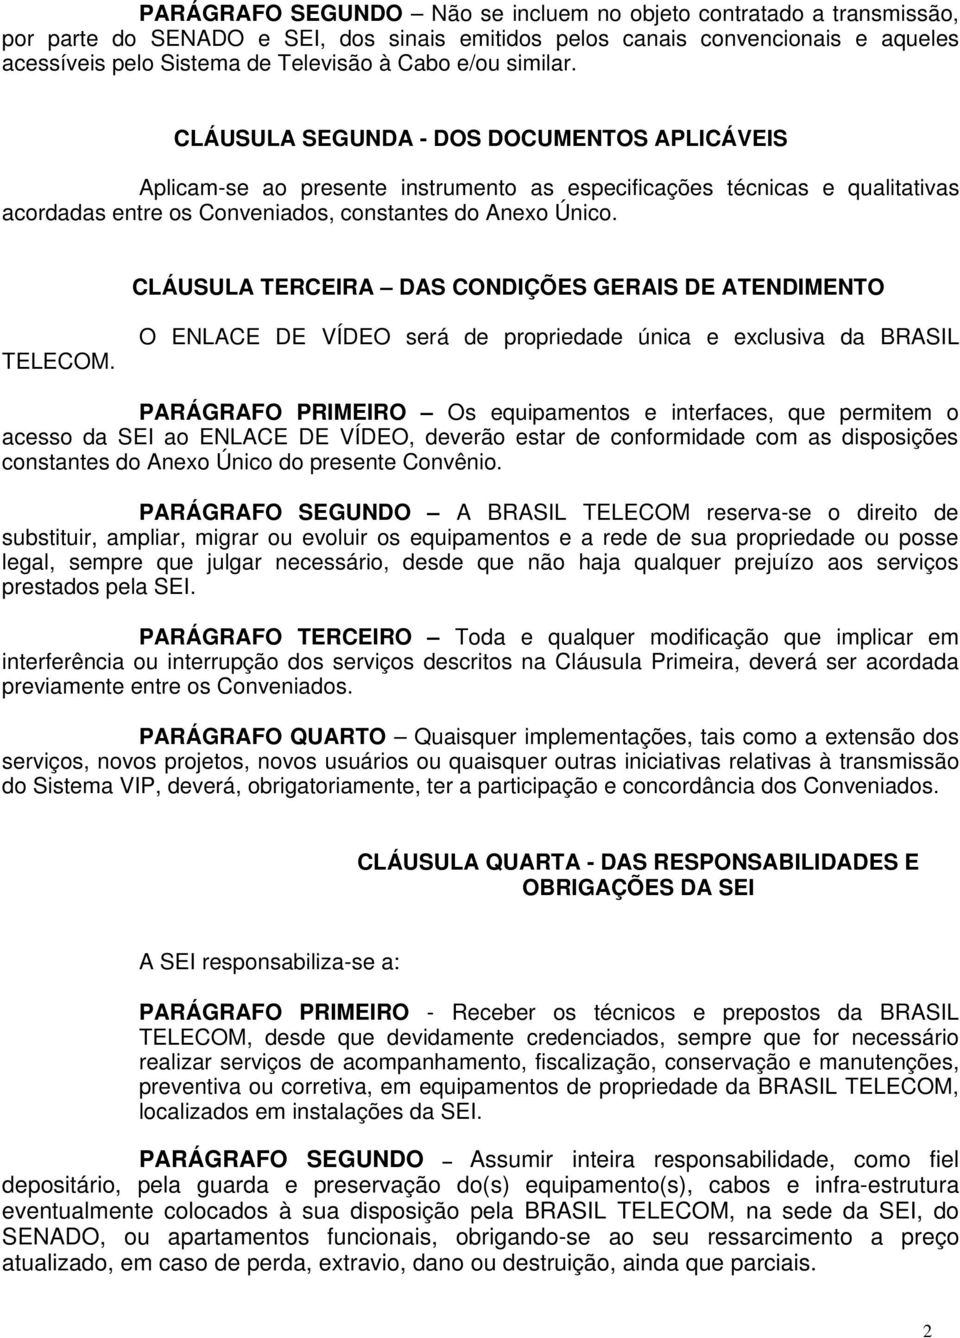 CLÁUSULA TERCEIRA DAS CONDIÇÕES GERAIS DE ATENDIMENTO TELECOM.